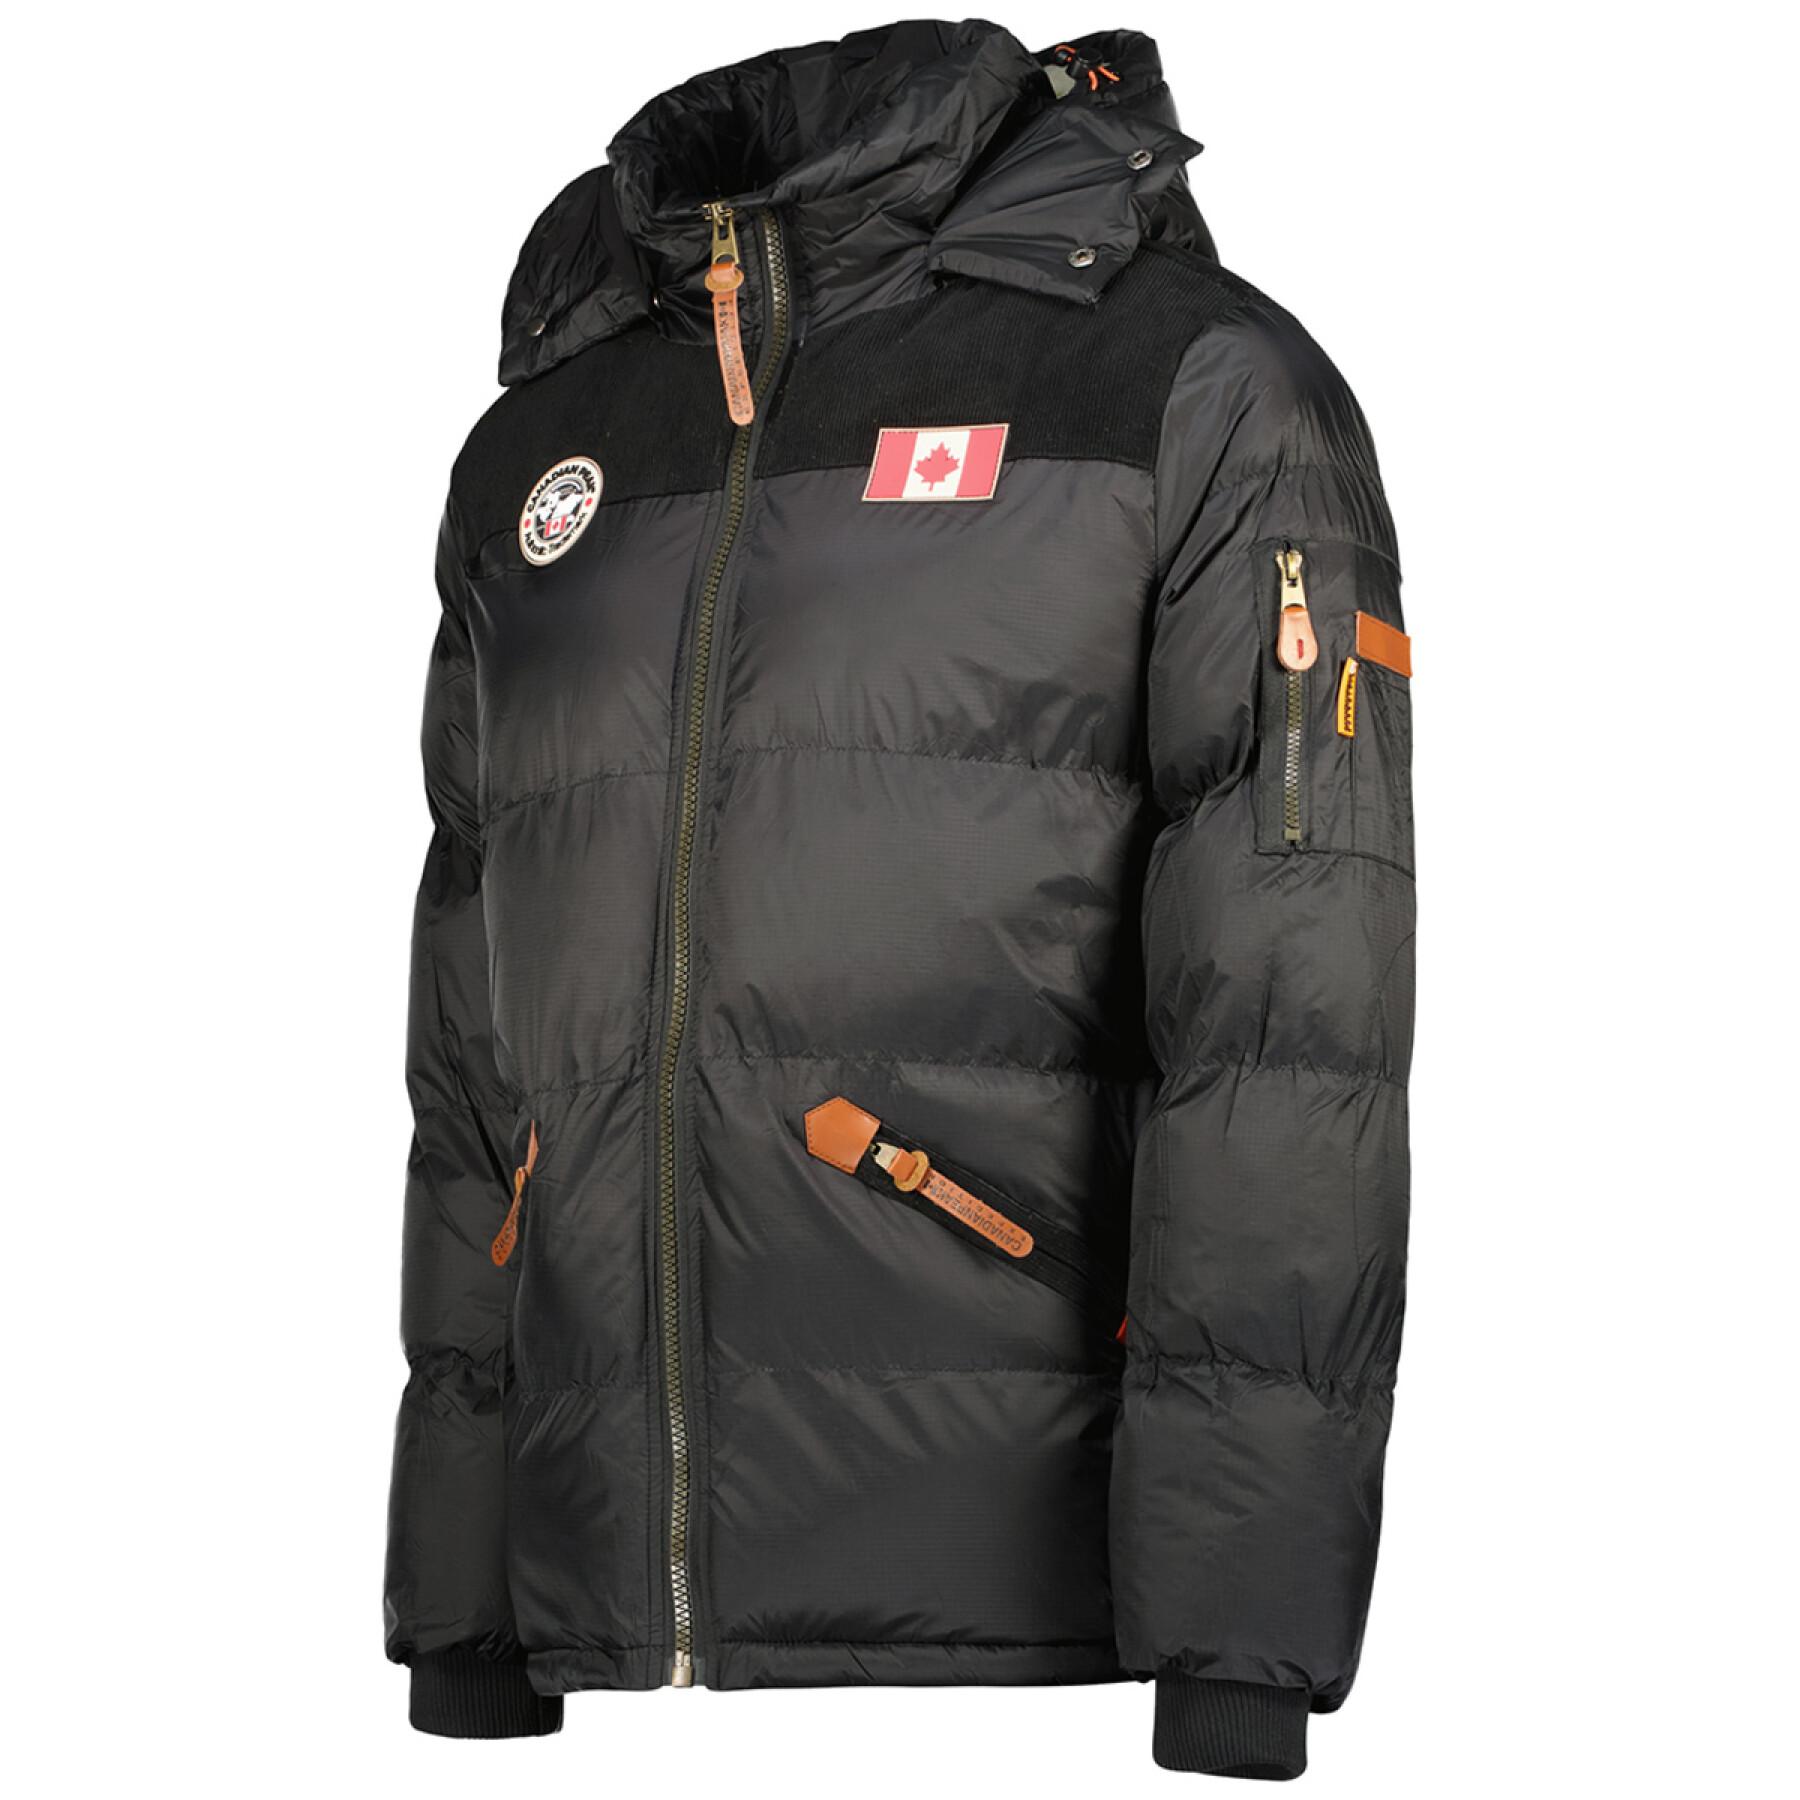 Down jacket Canadian Peak Celieak Cp